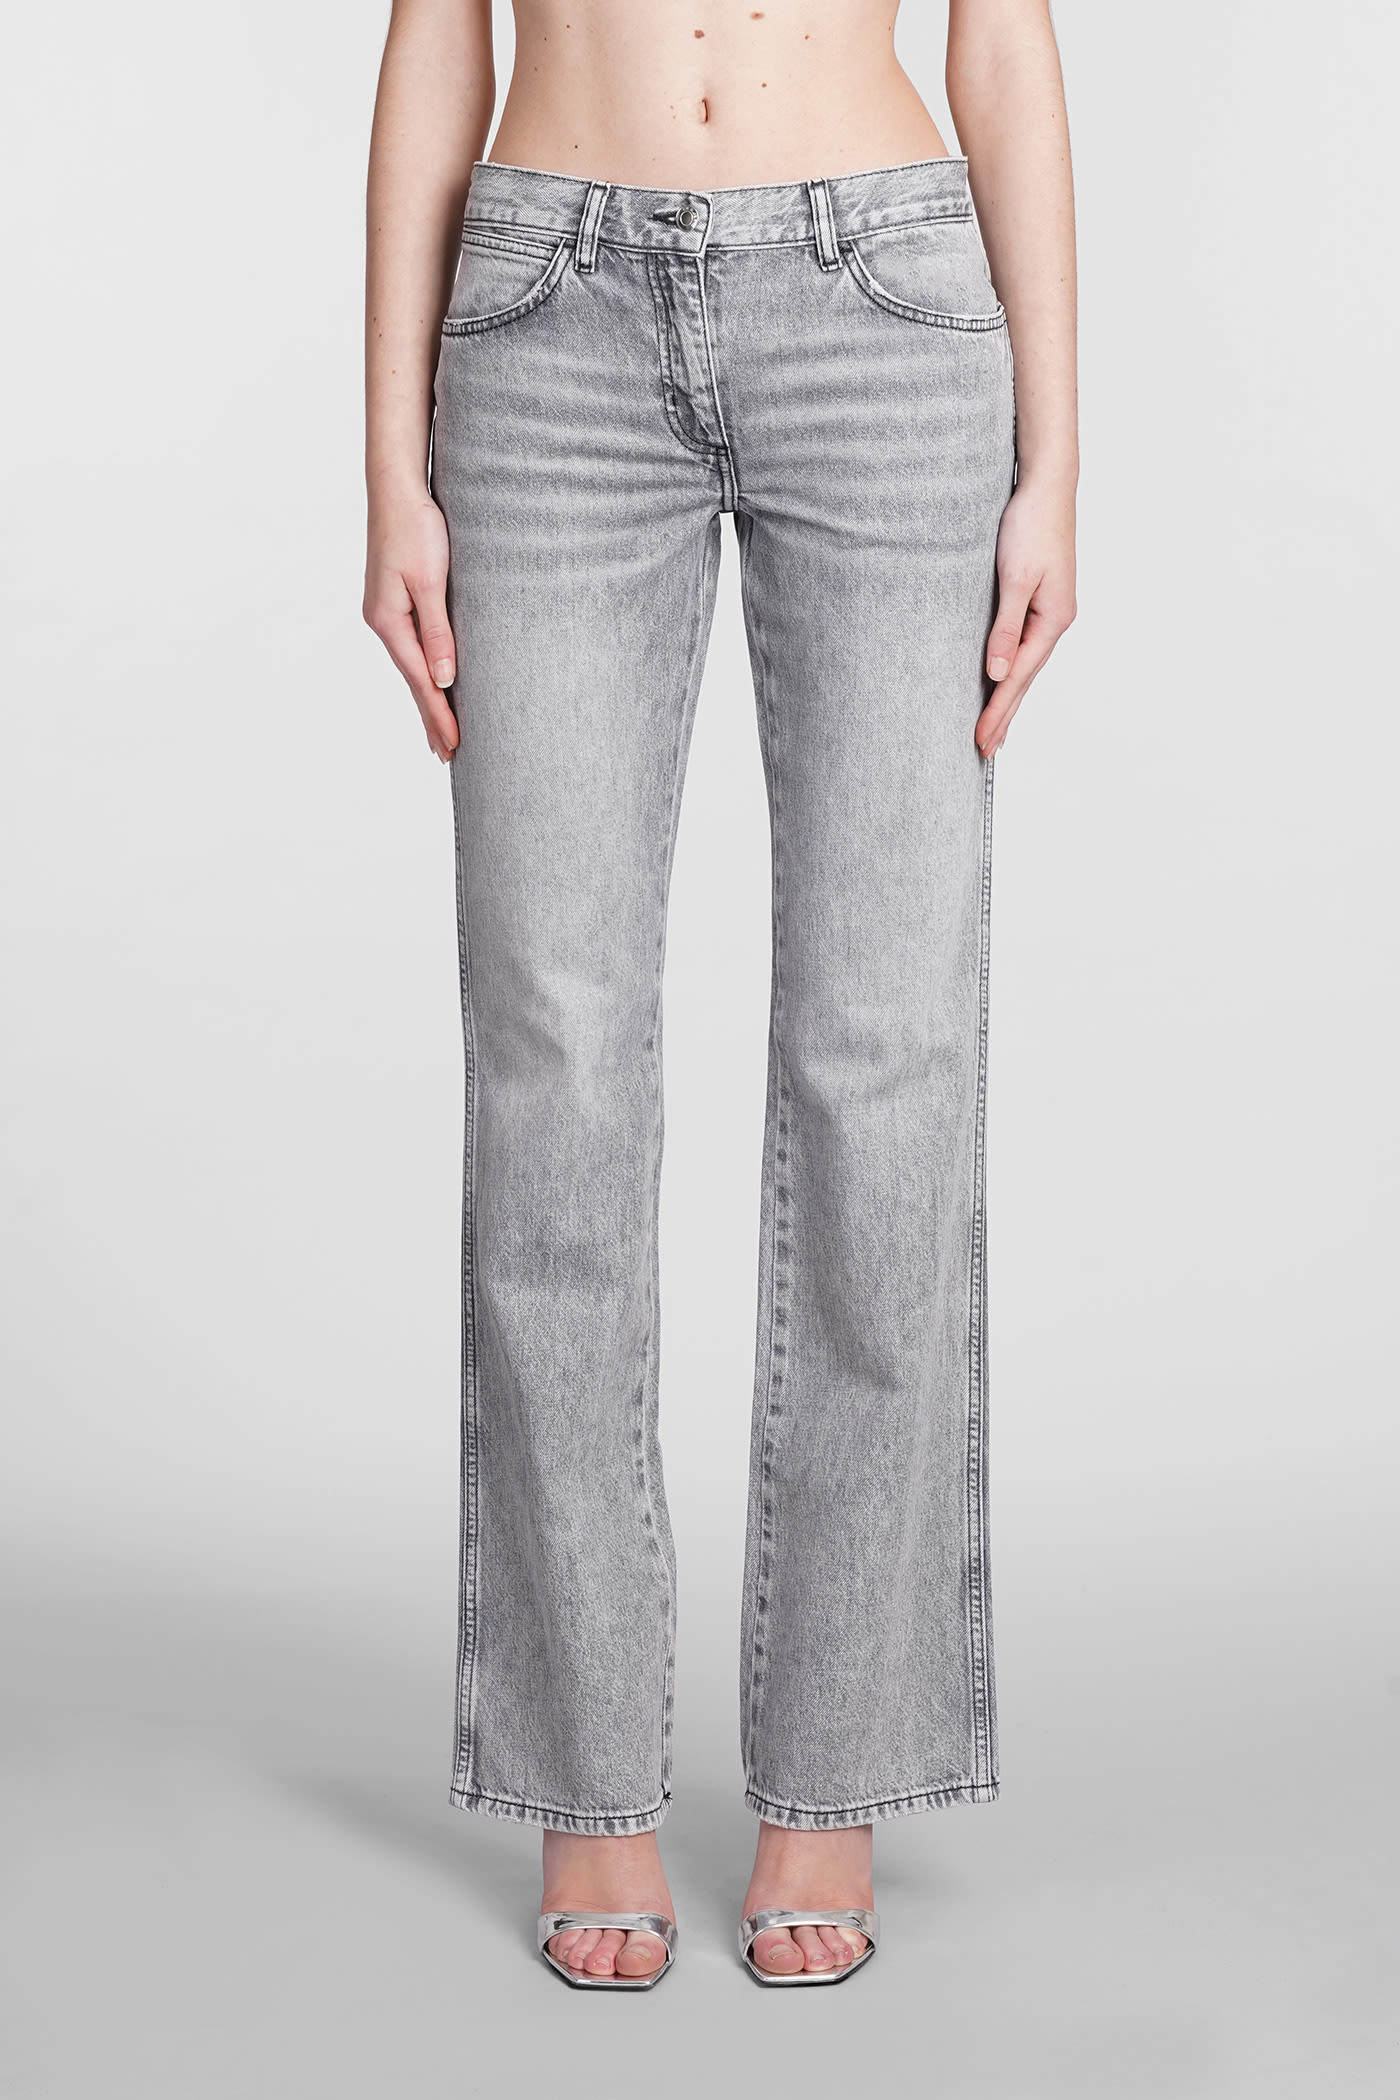 Barni Jeans In Grey Cotton